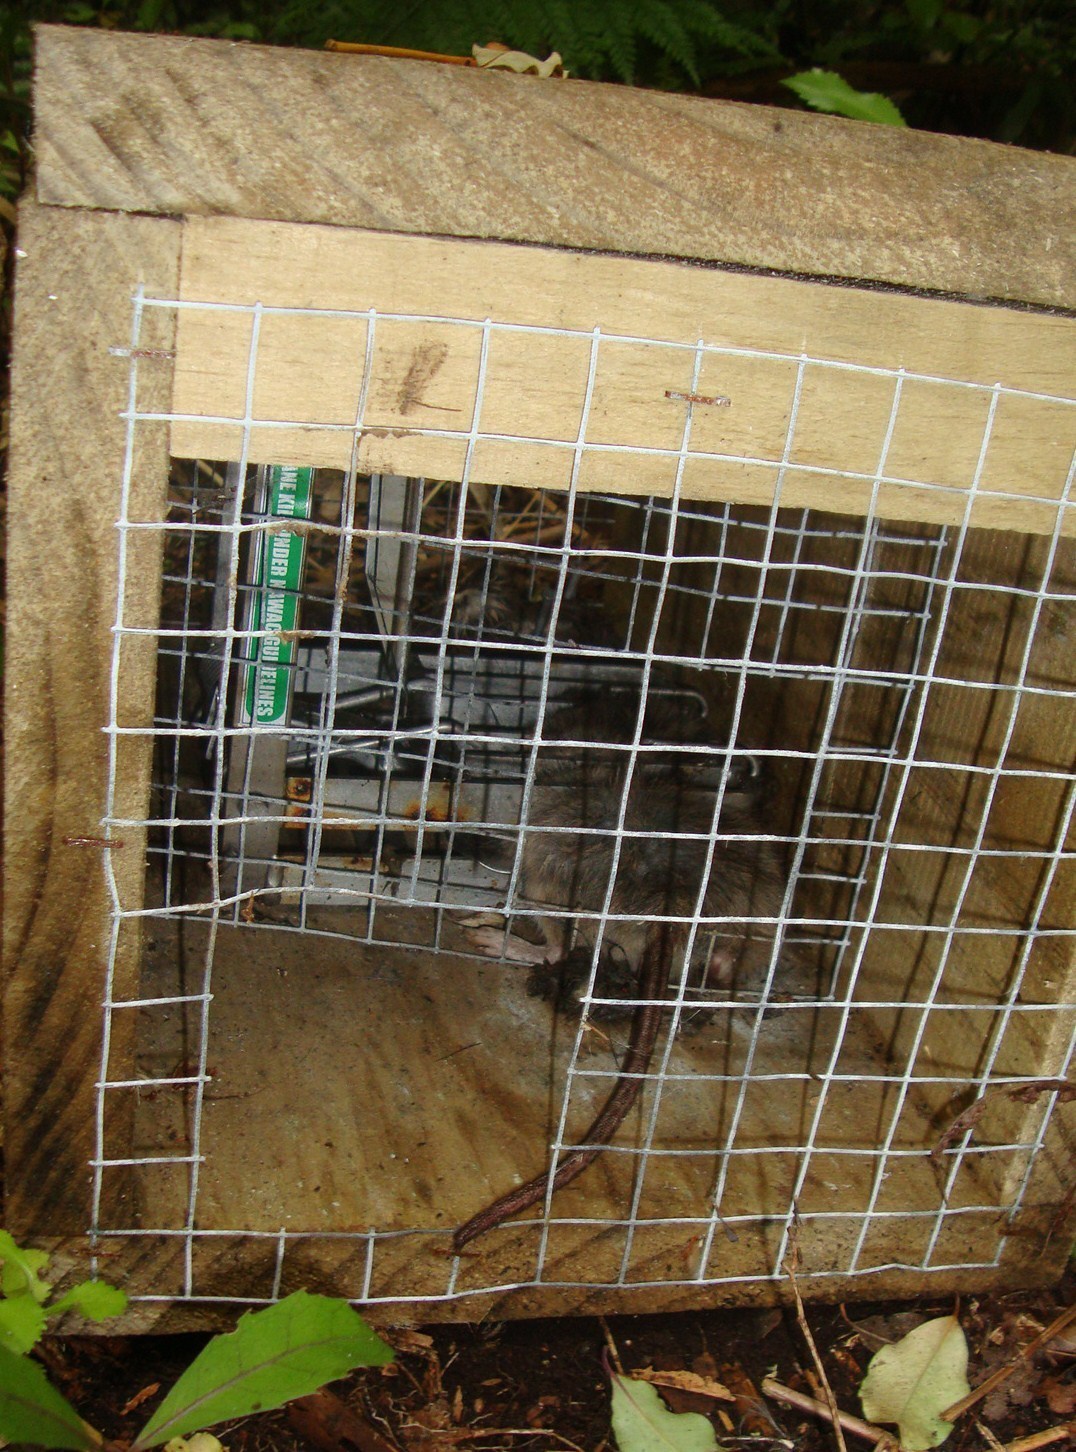 Image of Brown Rat